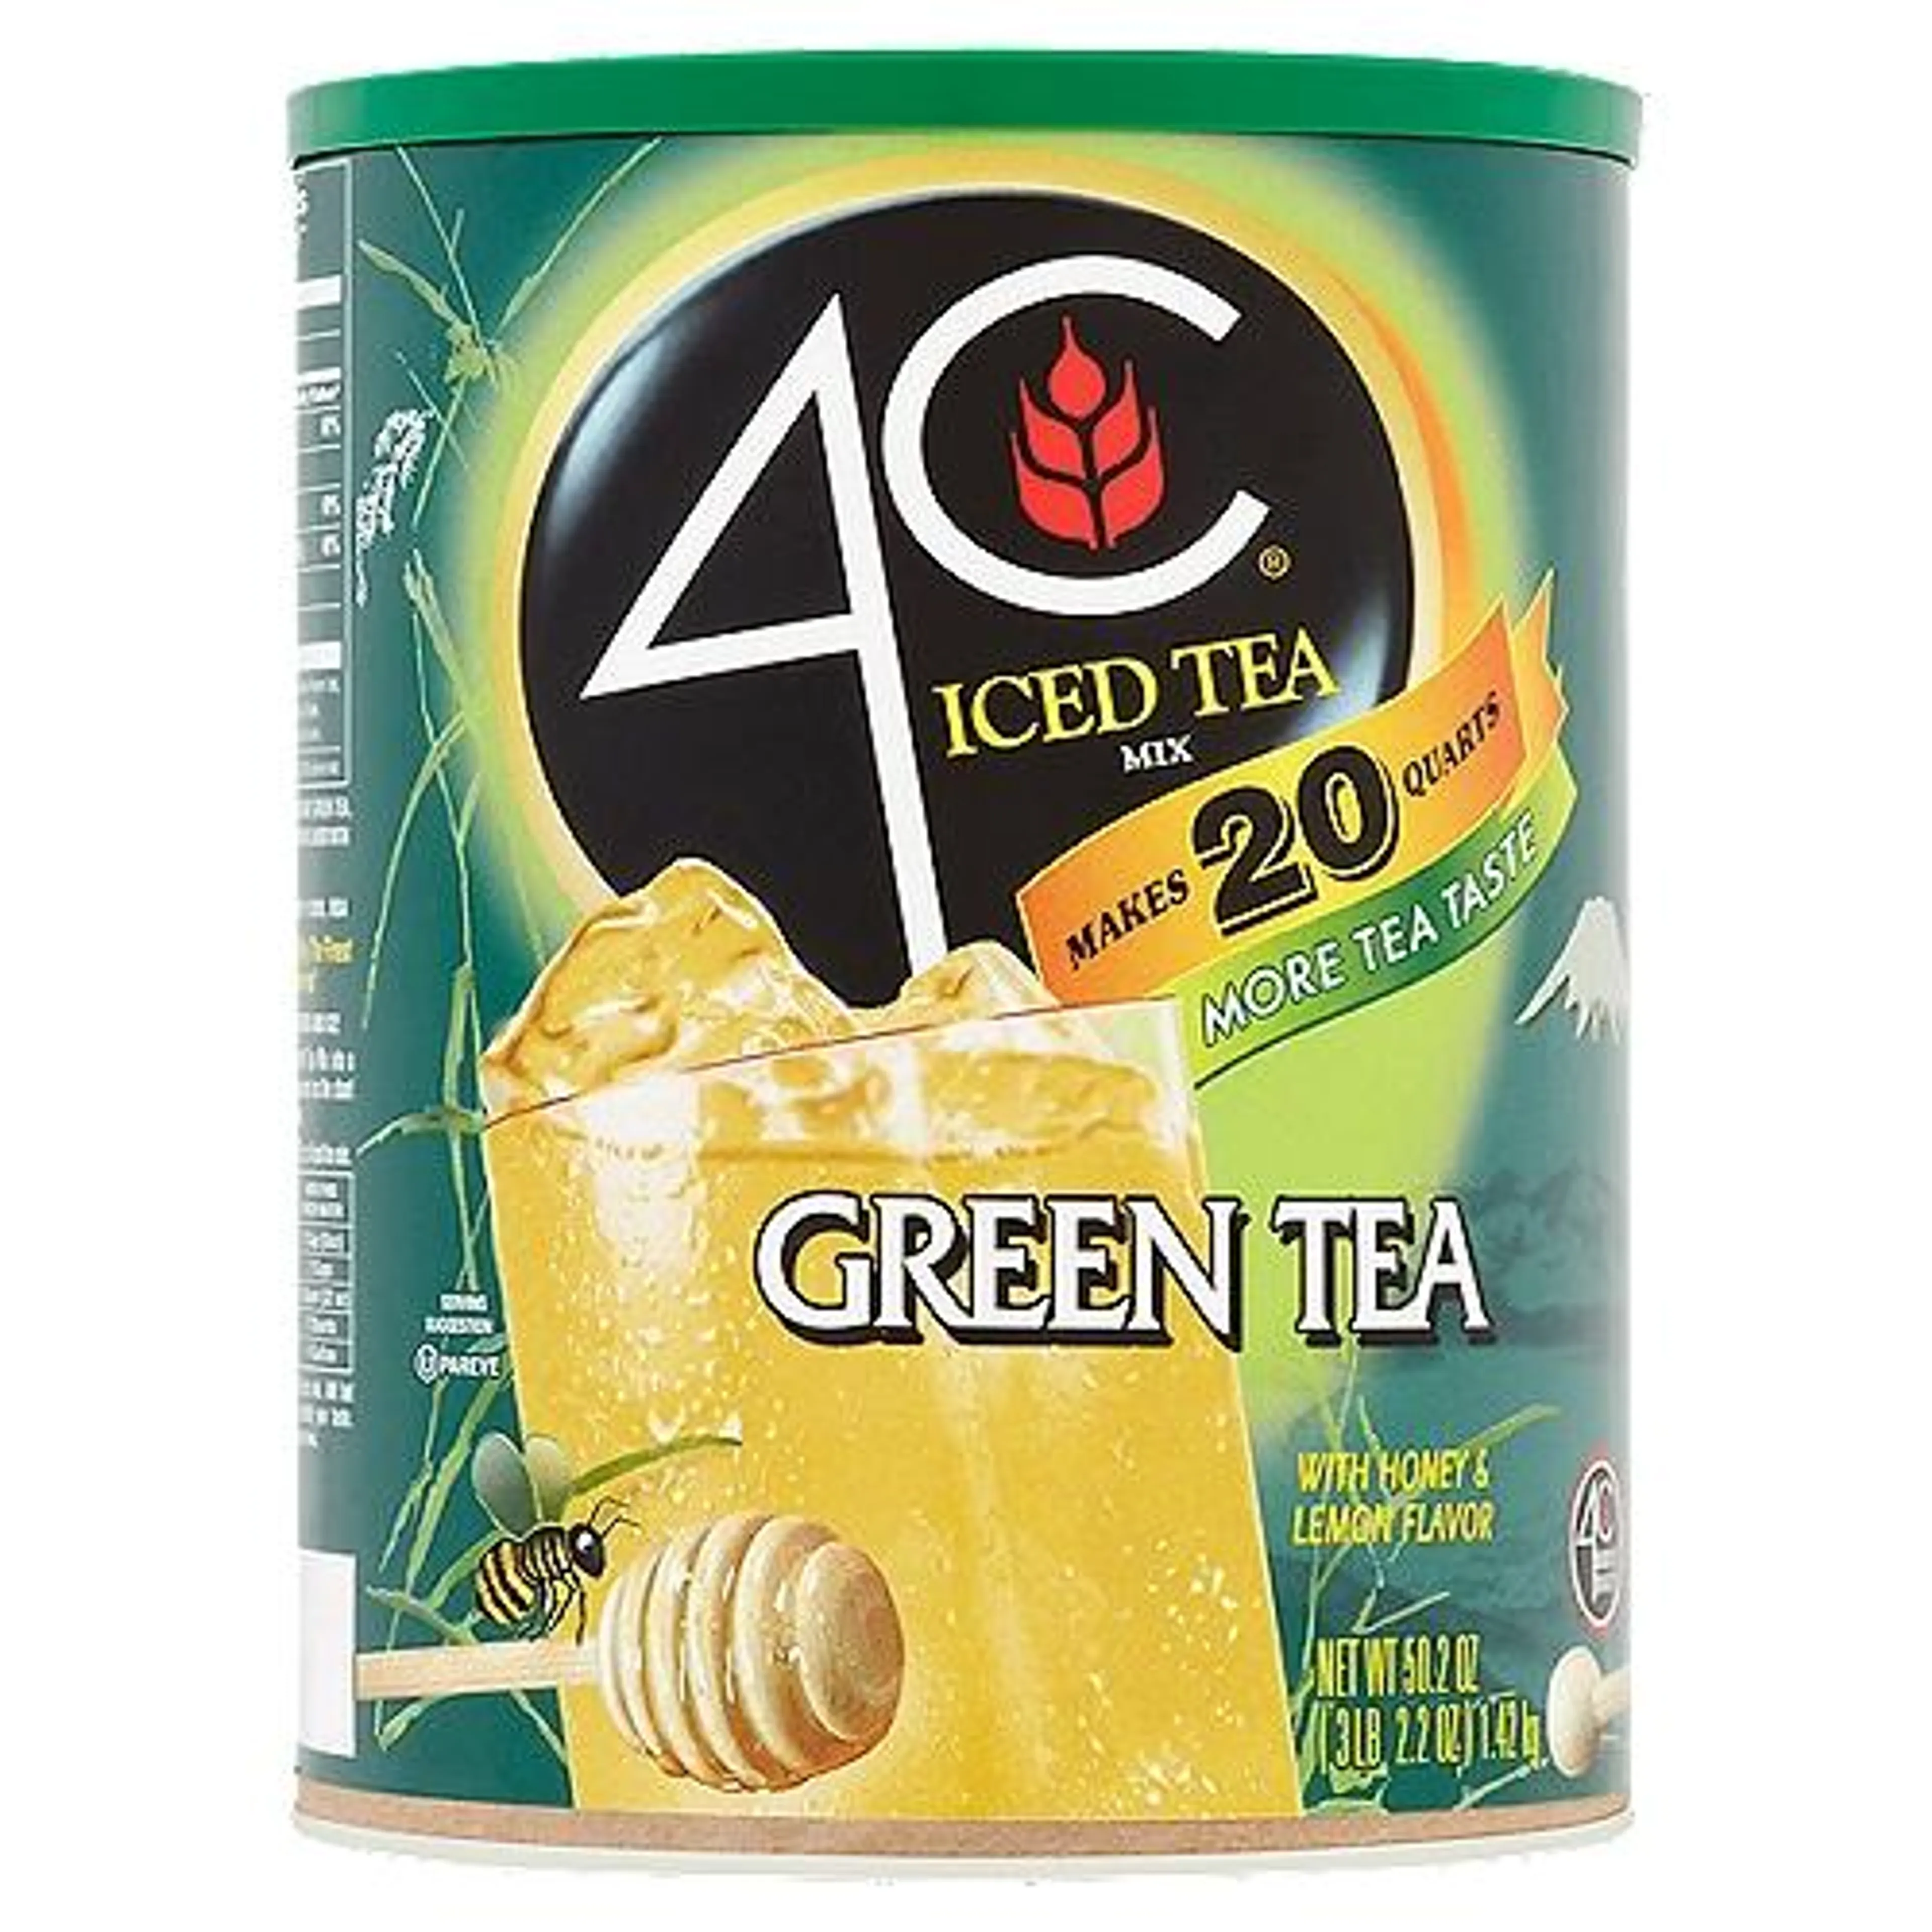 4C Green Tea, Iced Tea Mix, 50.2 Ounce